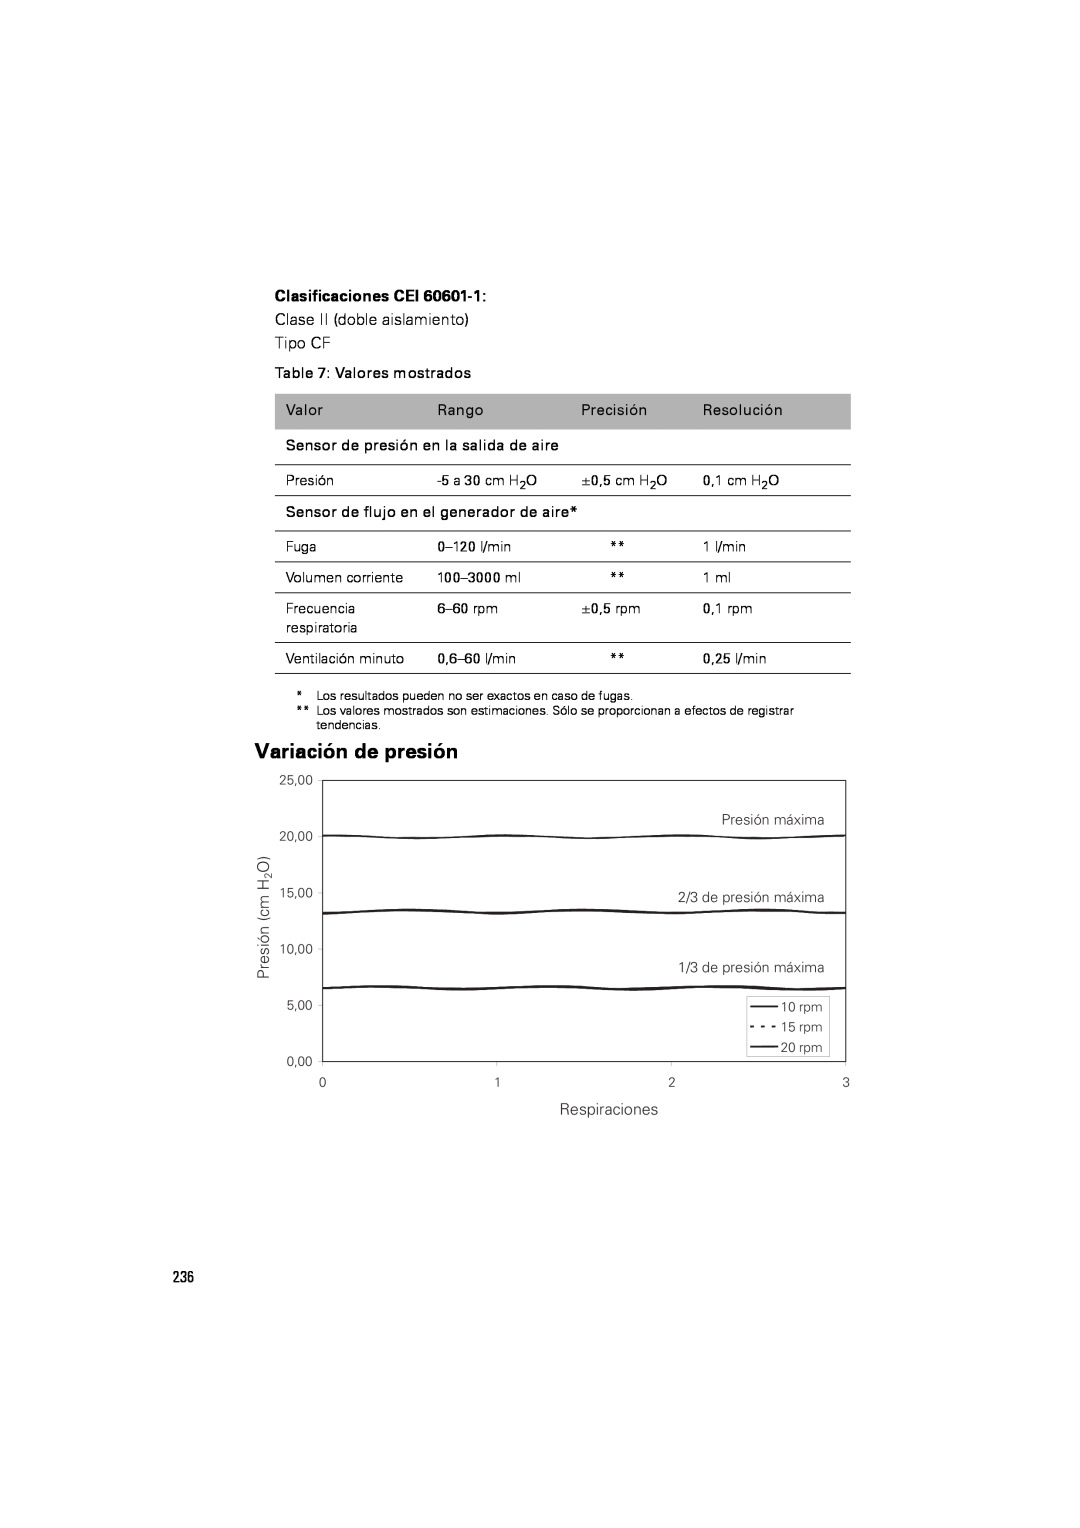 ResMed III & III ST user manual Variación de presión, Clasificaciones CEI 